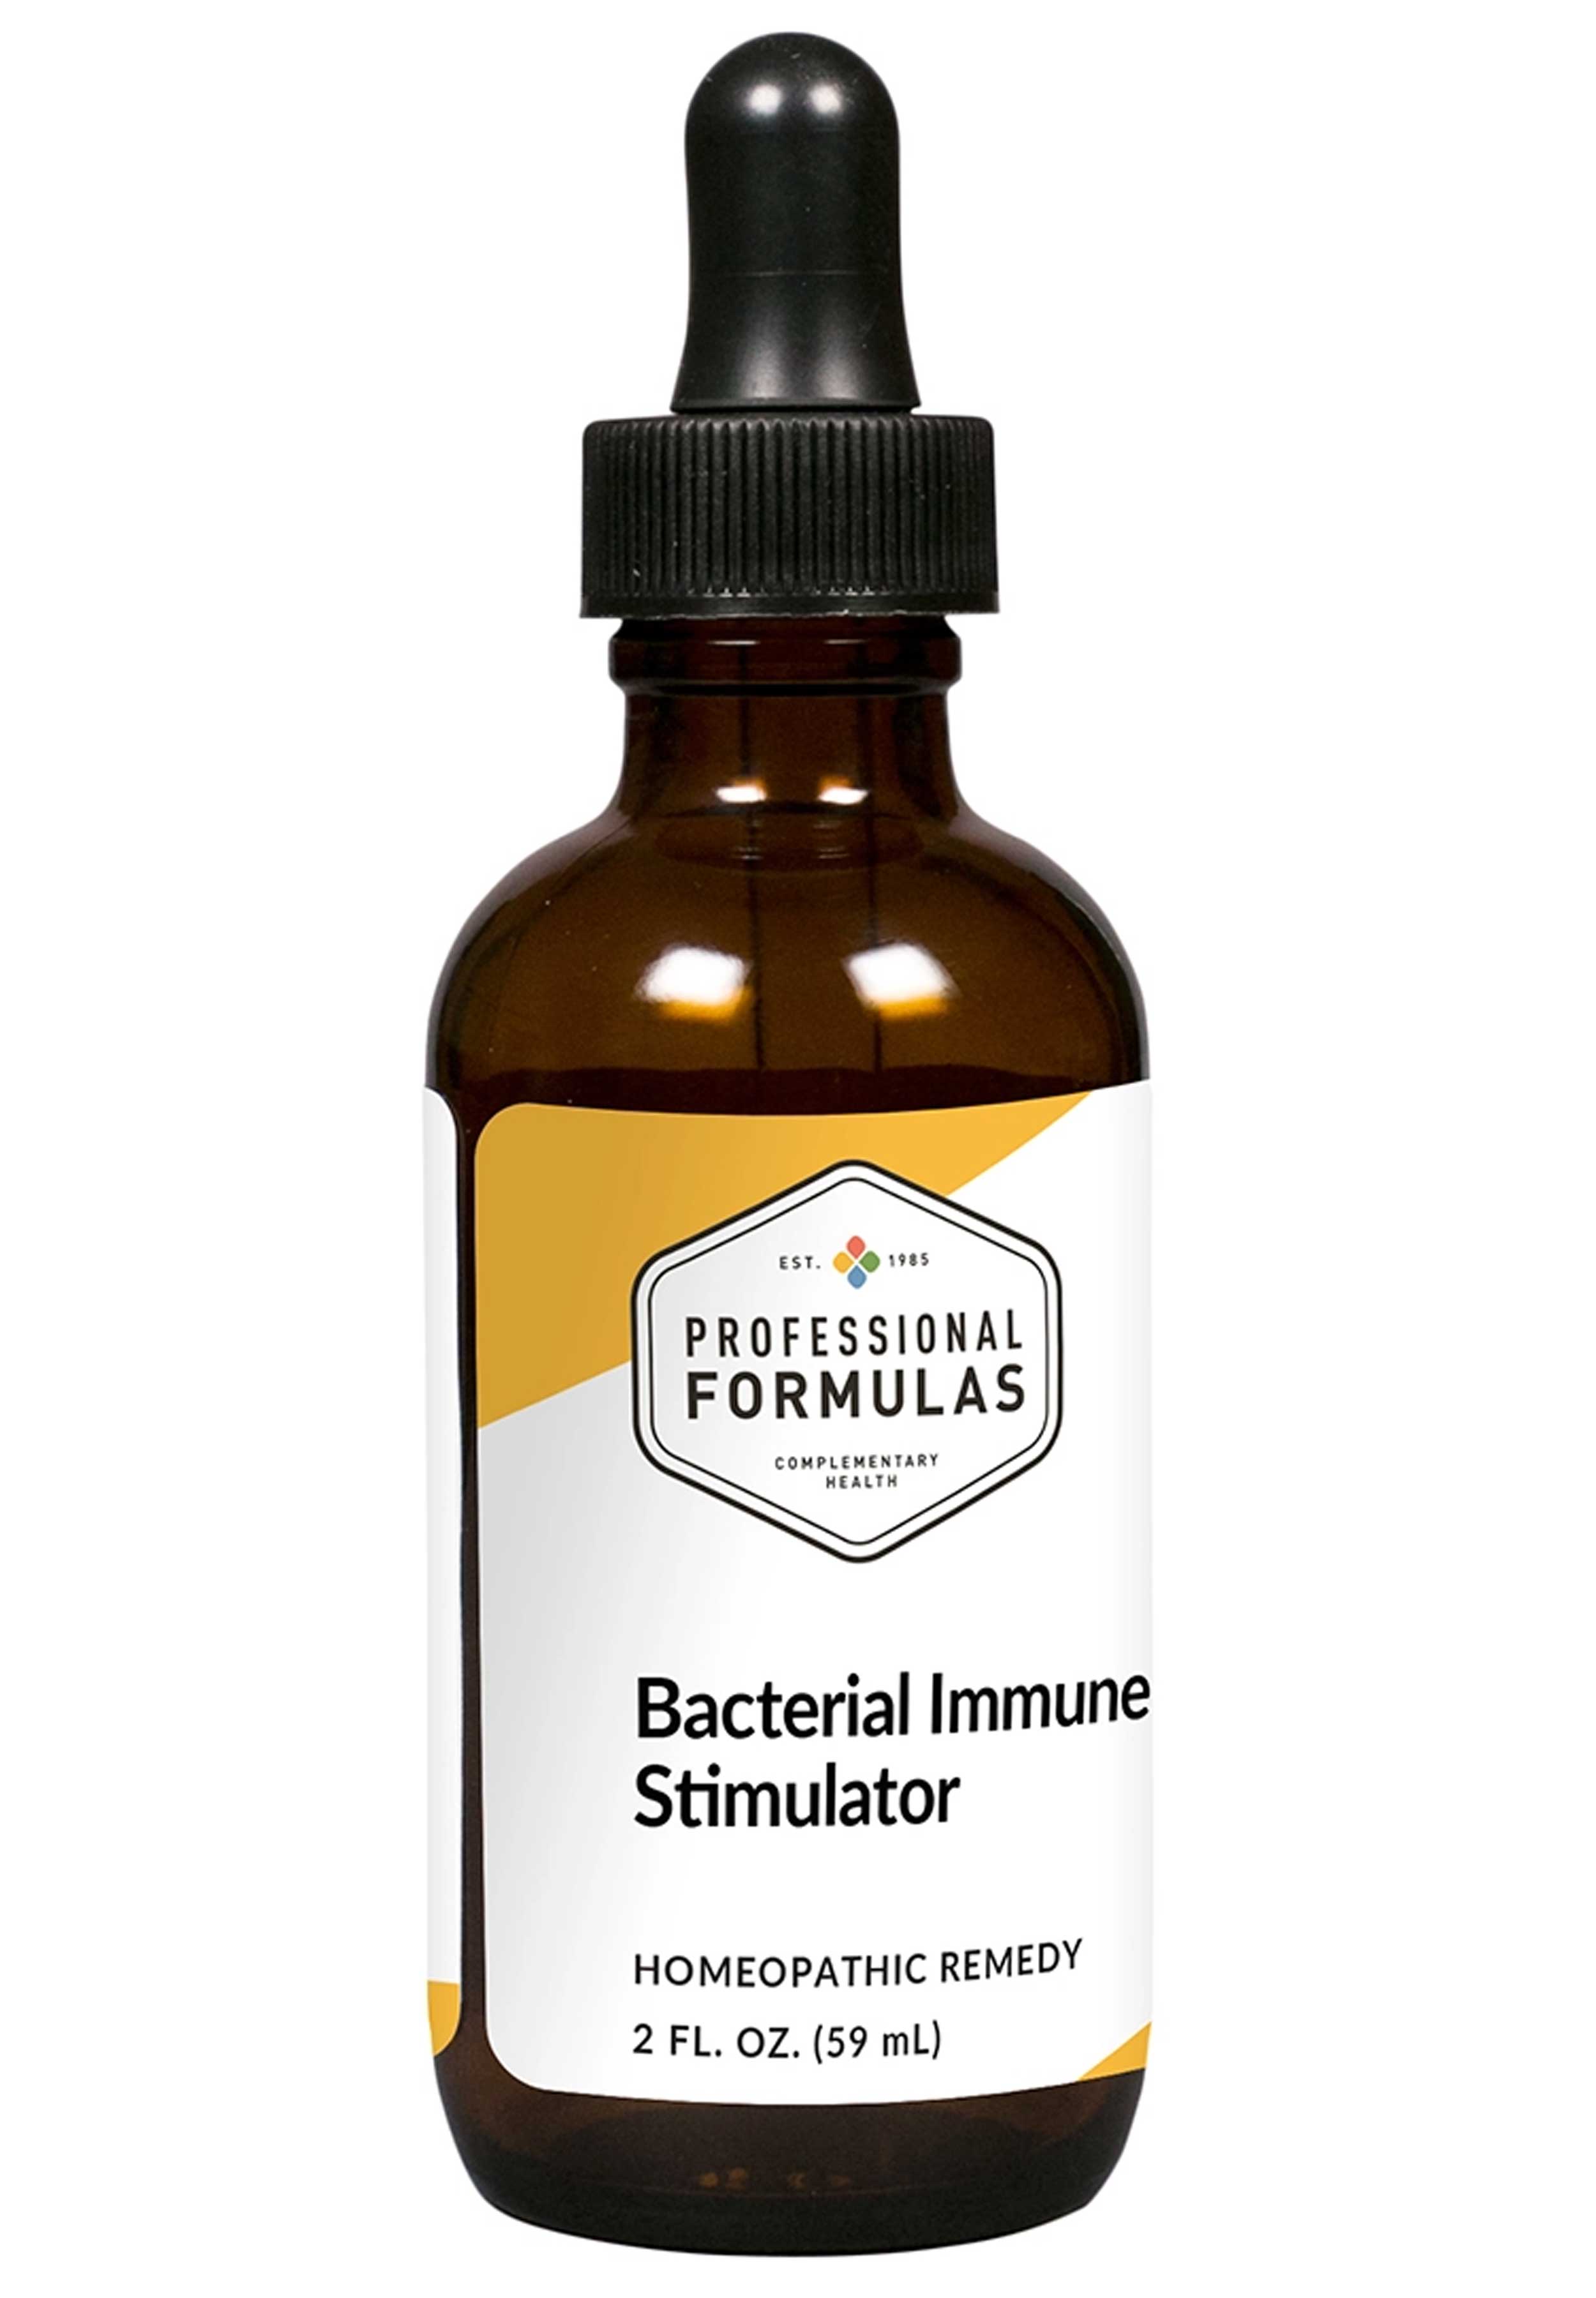 Professional Formulas Bacterial Immune Stimulator (Xenobiotics)